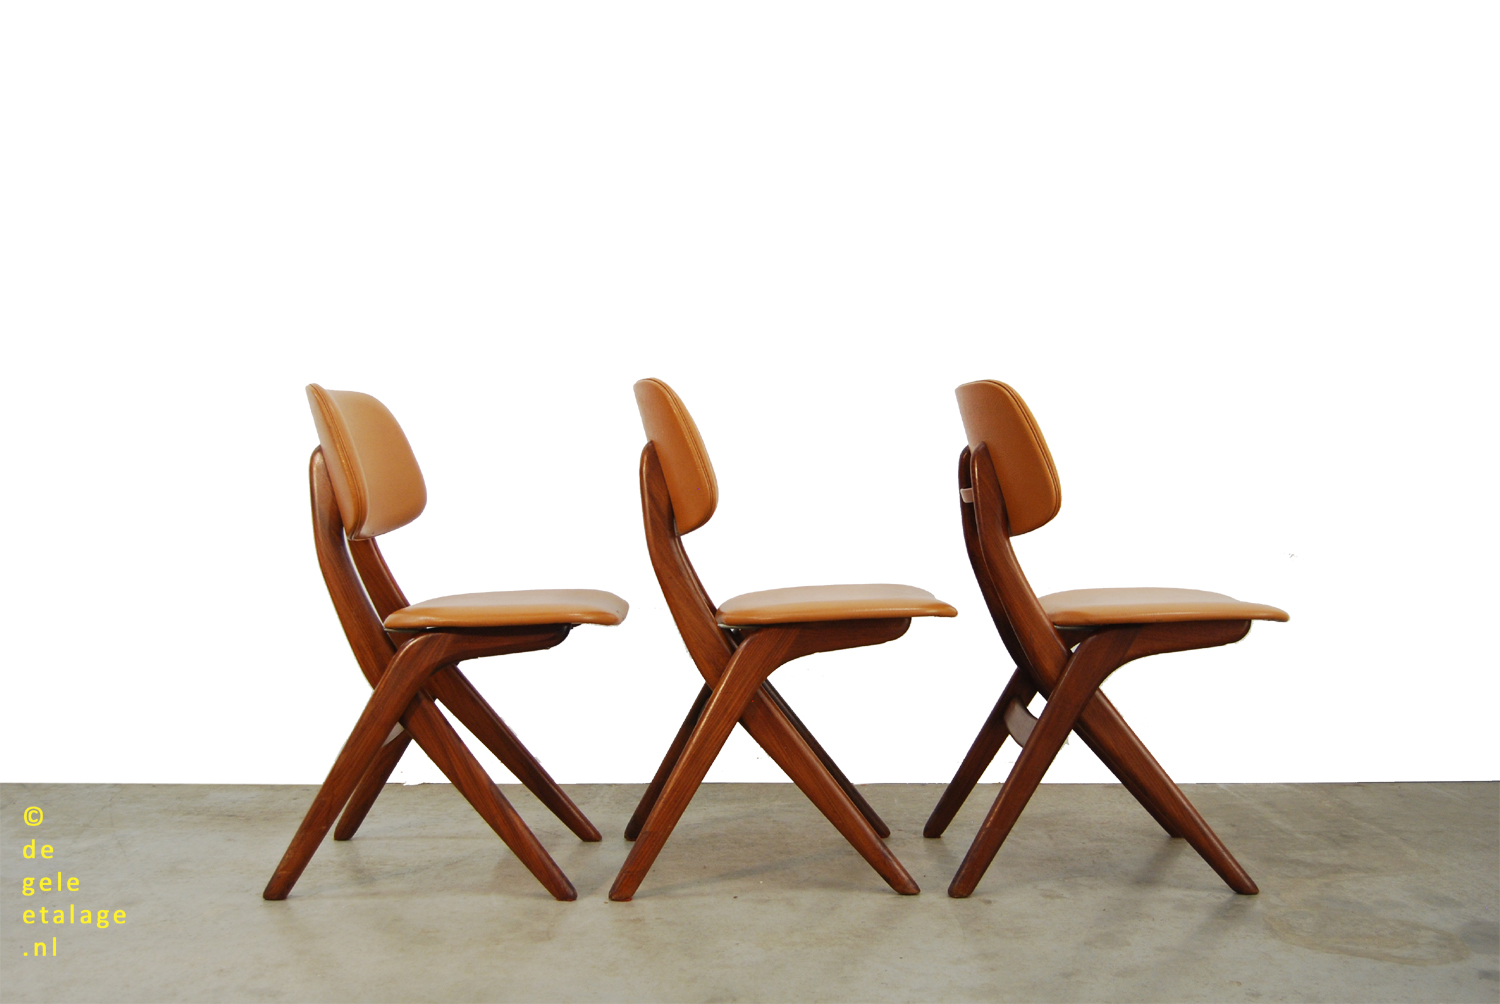 SALE / teakhouten eettafel stoelen / Louis van Teeffelen / Webe / 1960s / scissor chairs | ETALAGE